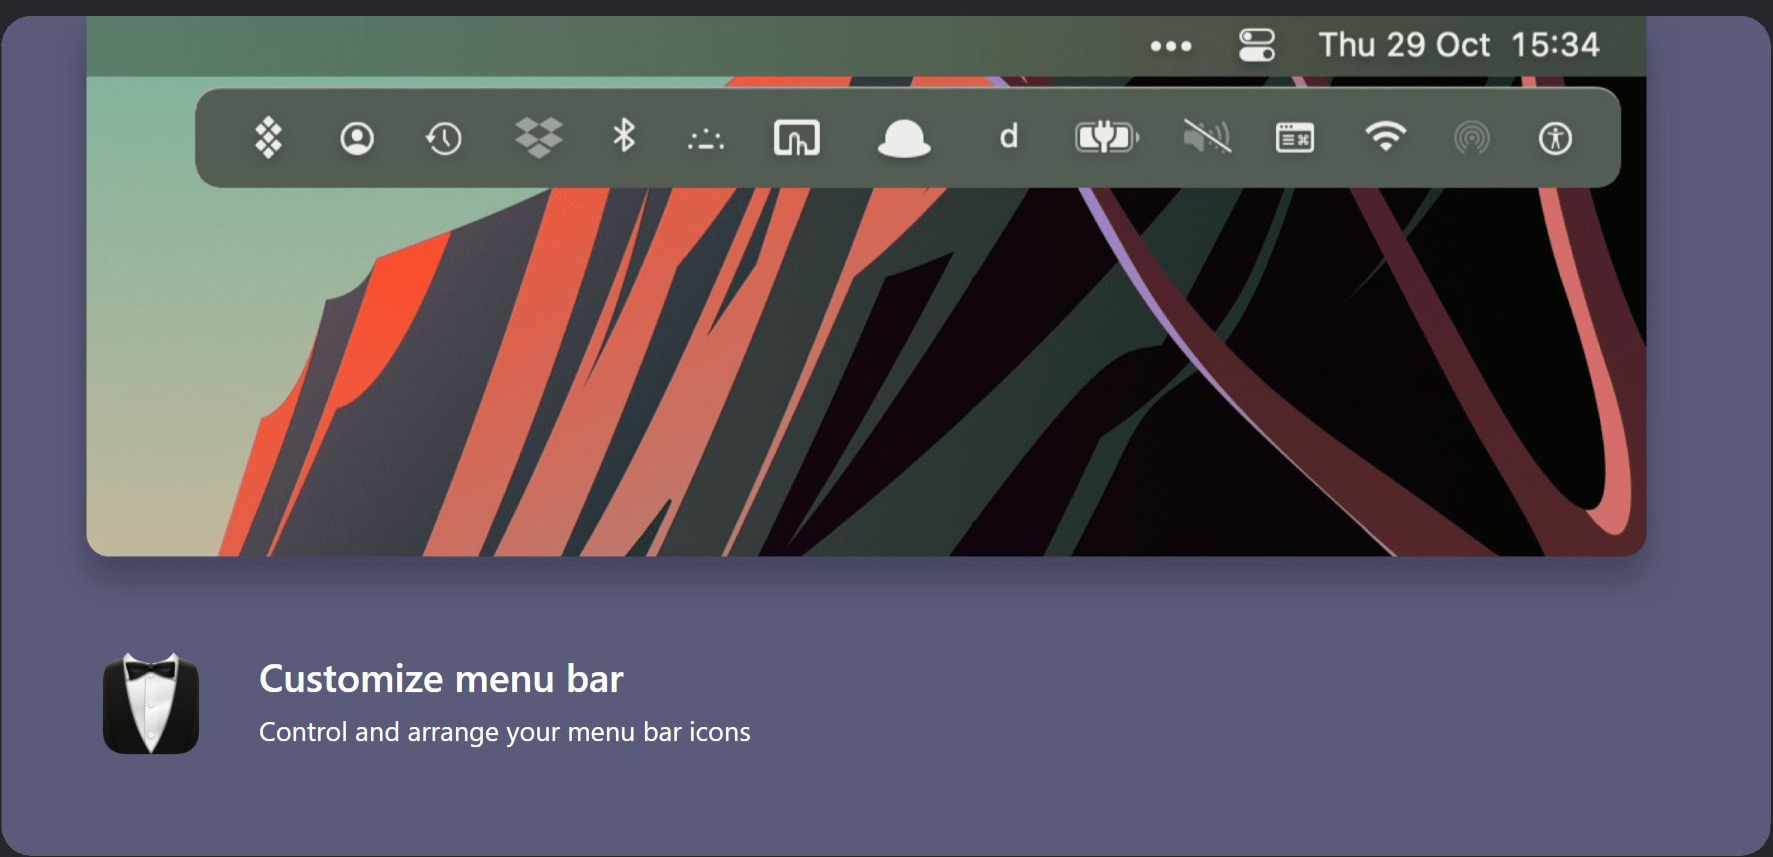 Customize menu bar